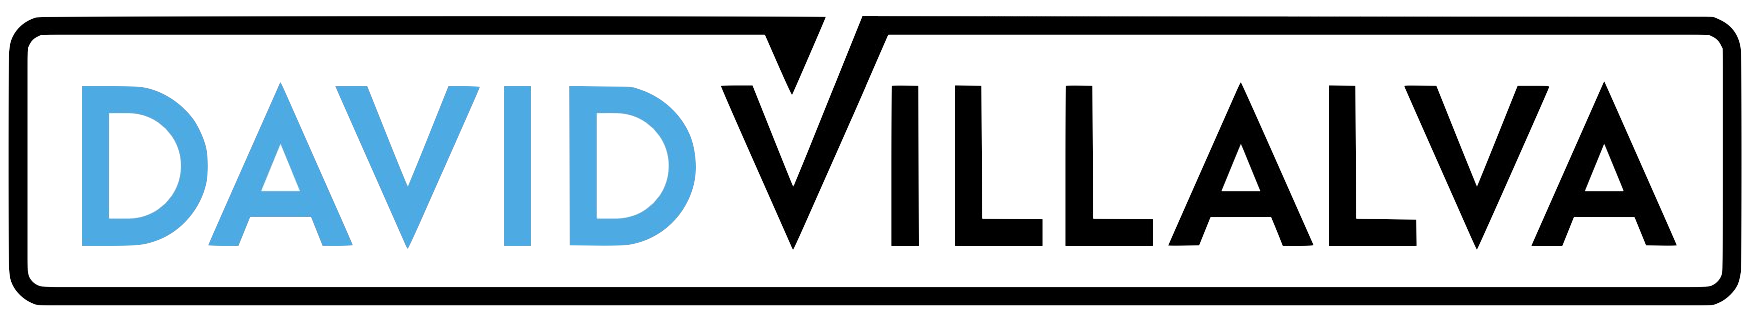 David Villalva Logo